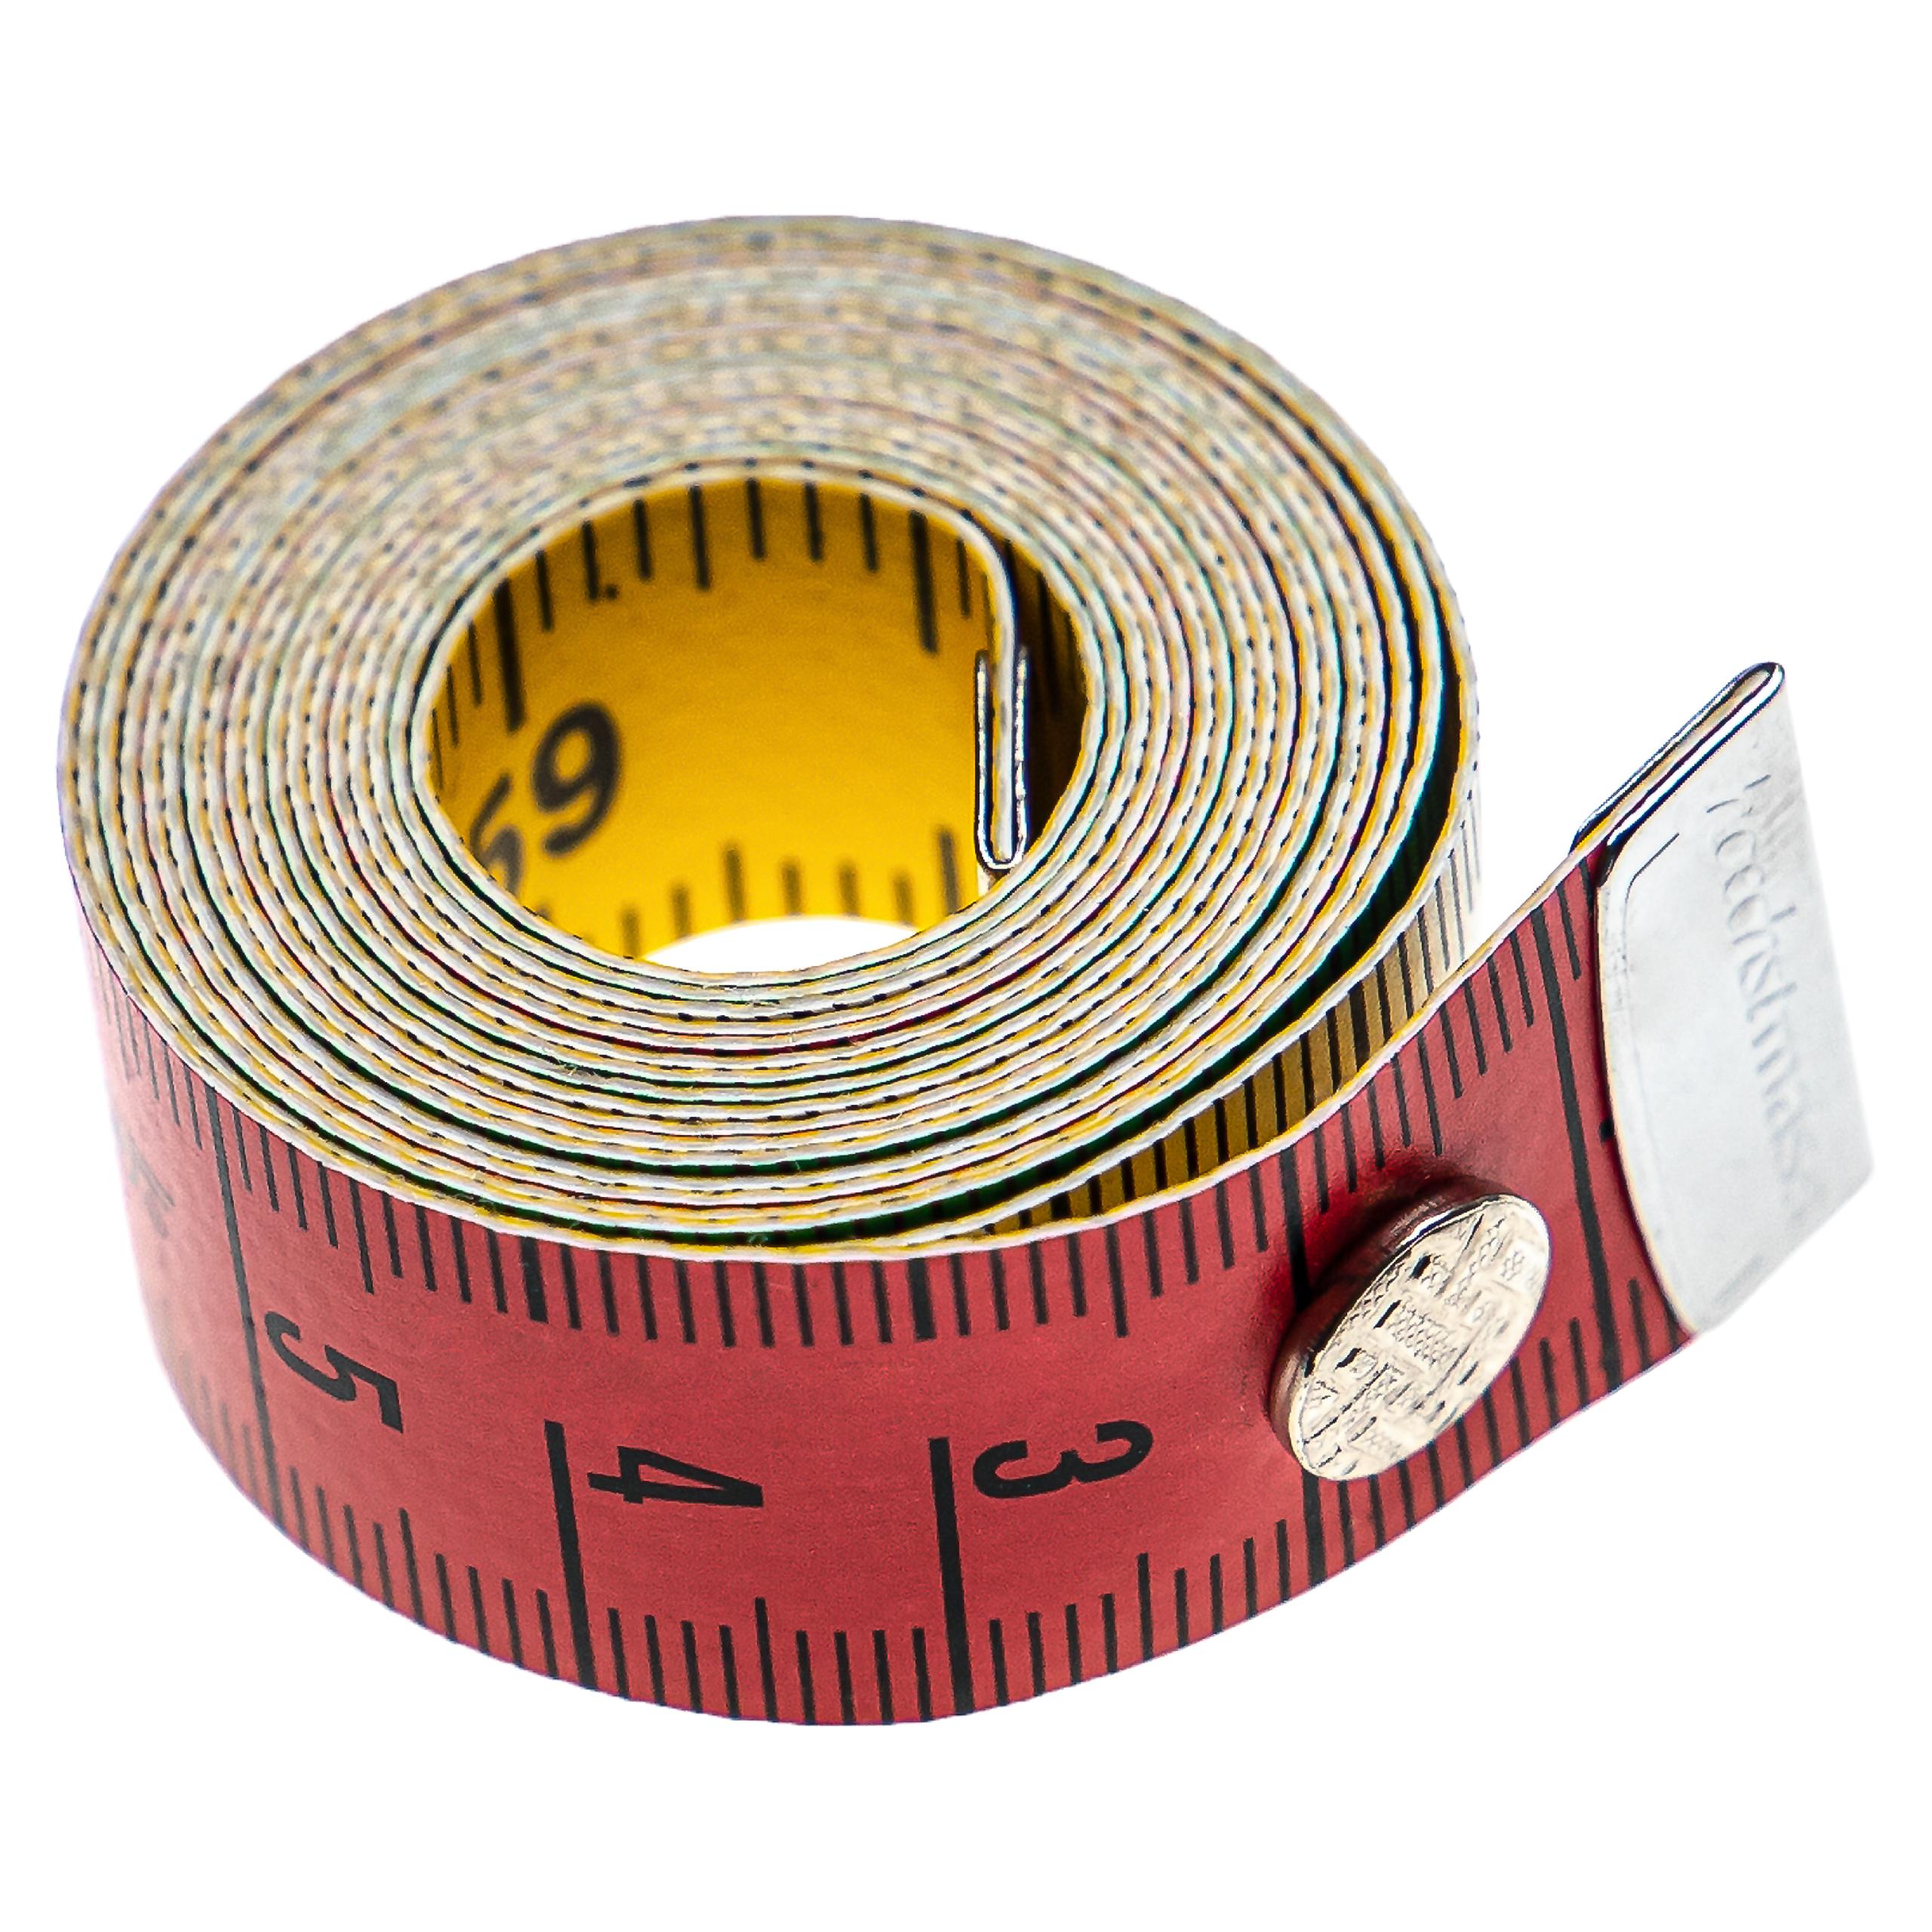 Vhbw Ruban de mesure avec bouton pression - Mètre ruban de couturière, 150  cm, 4 couleurs, échelle cm + pouces, flexible